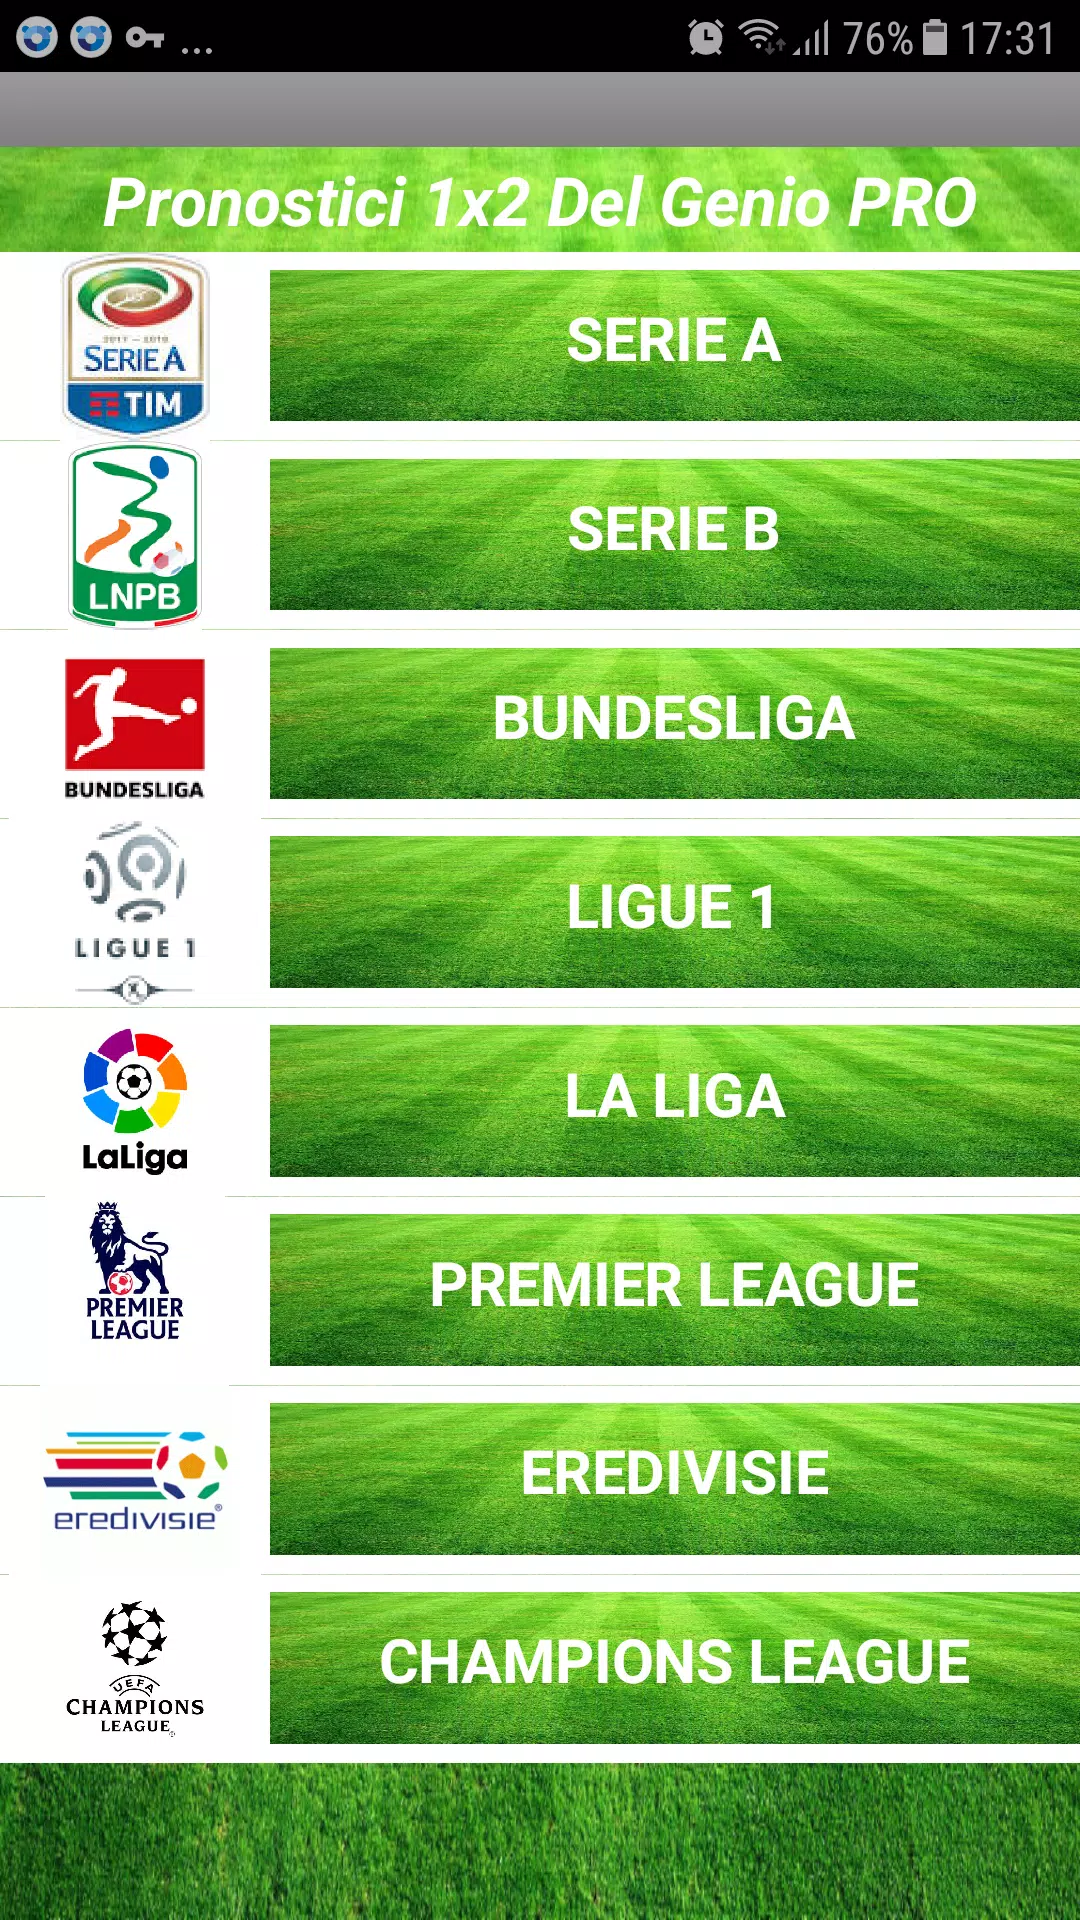 Pronostici calcio scommesse 1x2 Del Genio for Android - APK Download